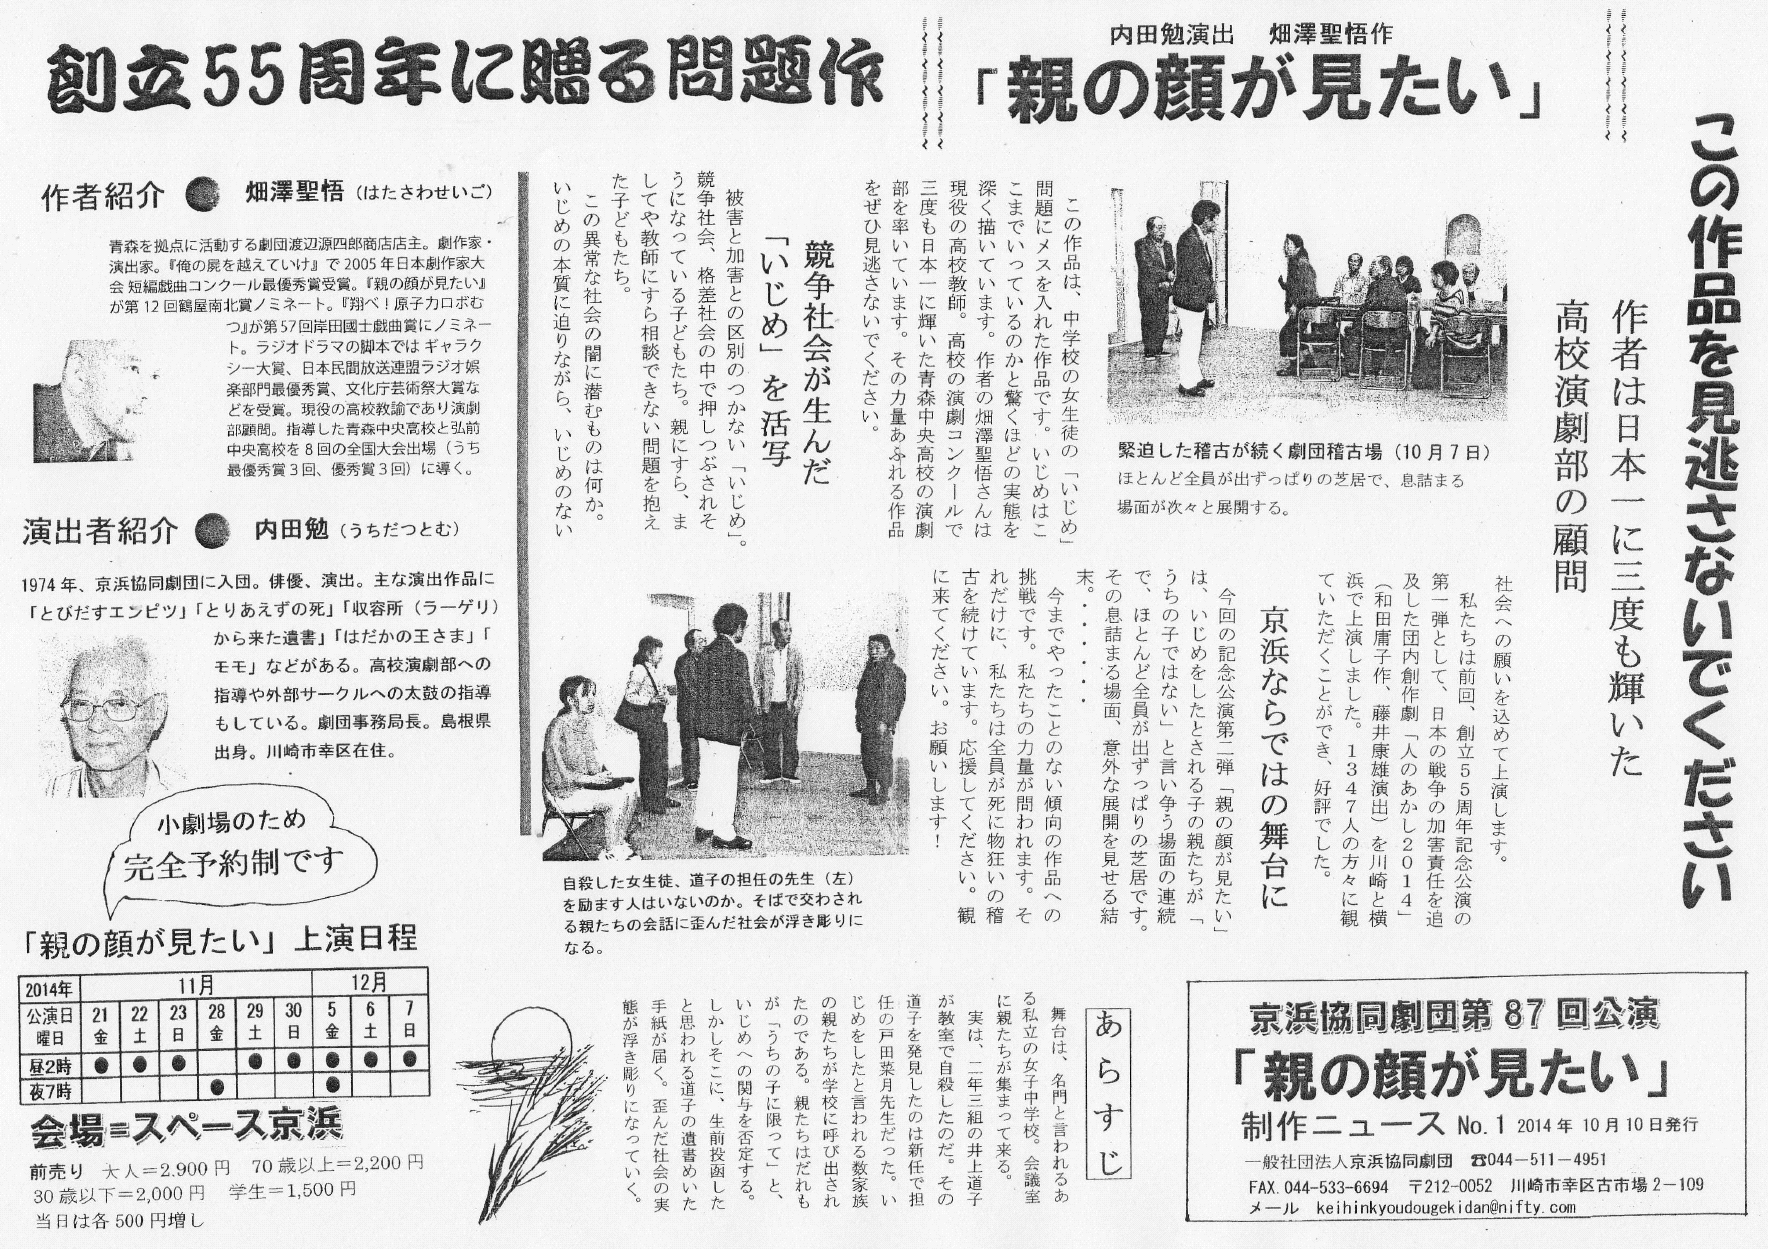 いじめの根っこを探る　「親の顔が見たい」　京浜協同劇団　創立55 周年記念公演の第2 弾